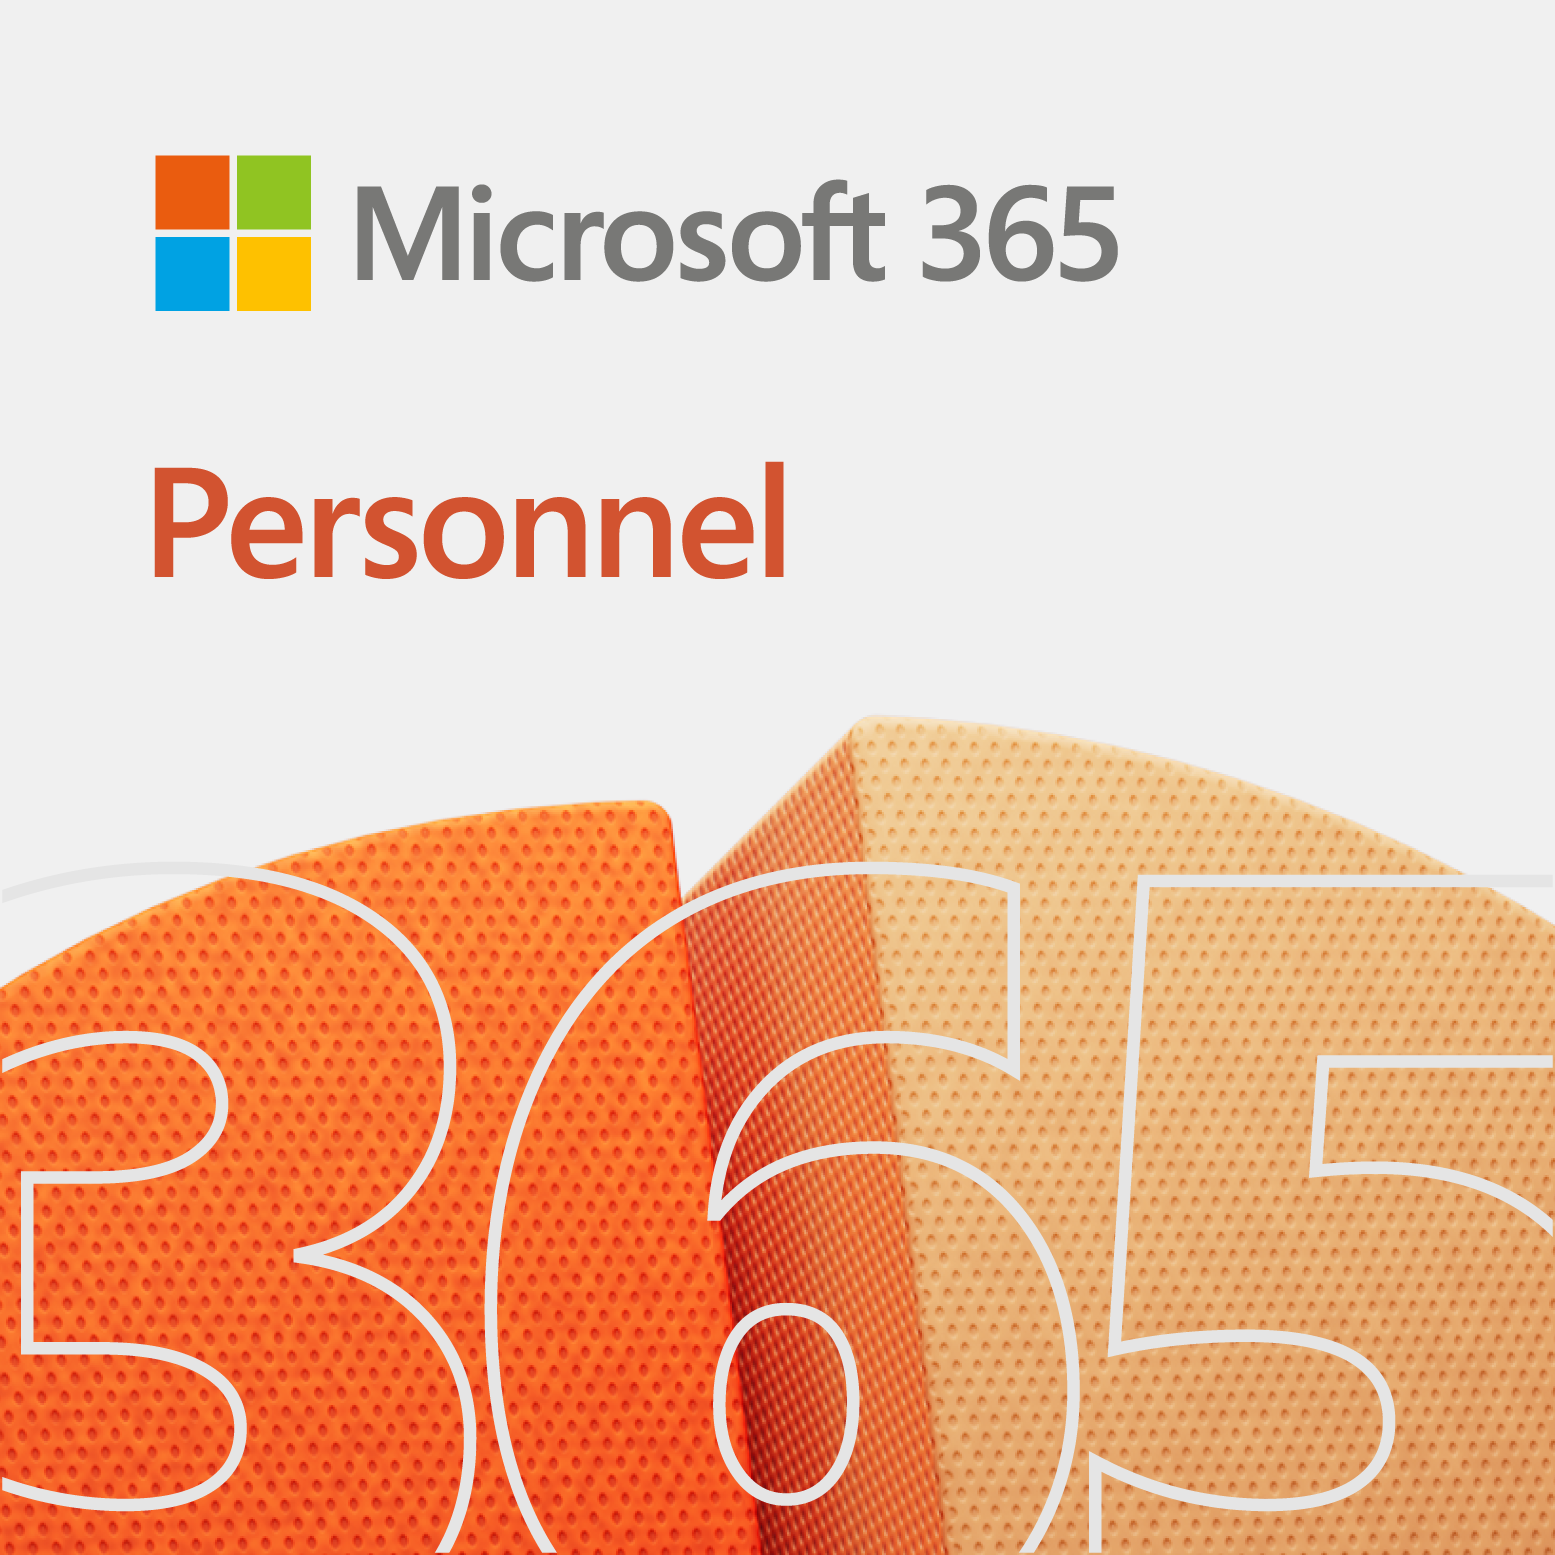 Microsoft 365 Personnel